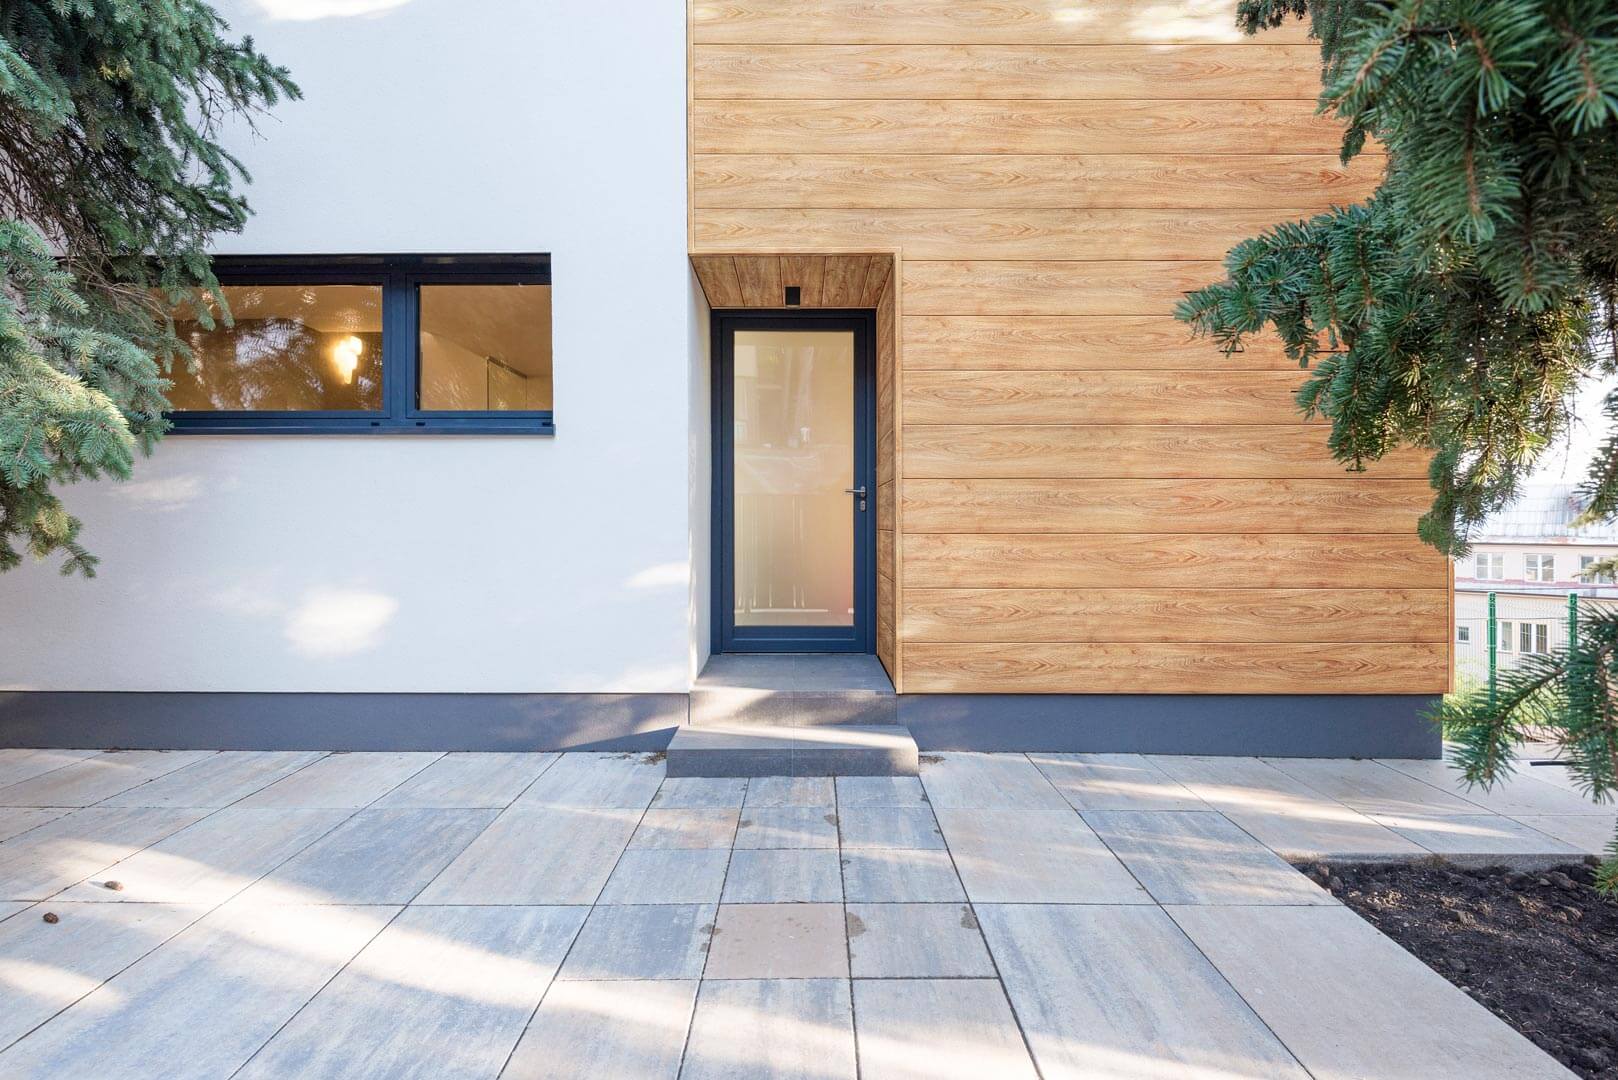 ie Fassadenpaneele von Vinylit Multipaneel Design in Holzoptik sind im Gegensatz zu Fassadenholz nahezu wartungsfrei und enorm robust